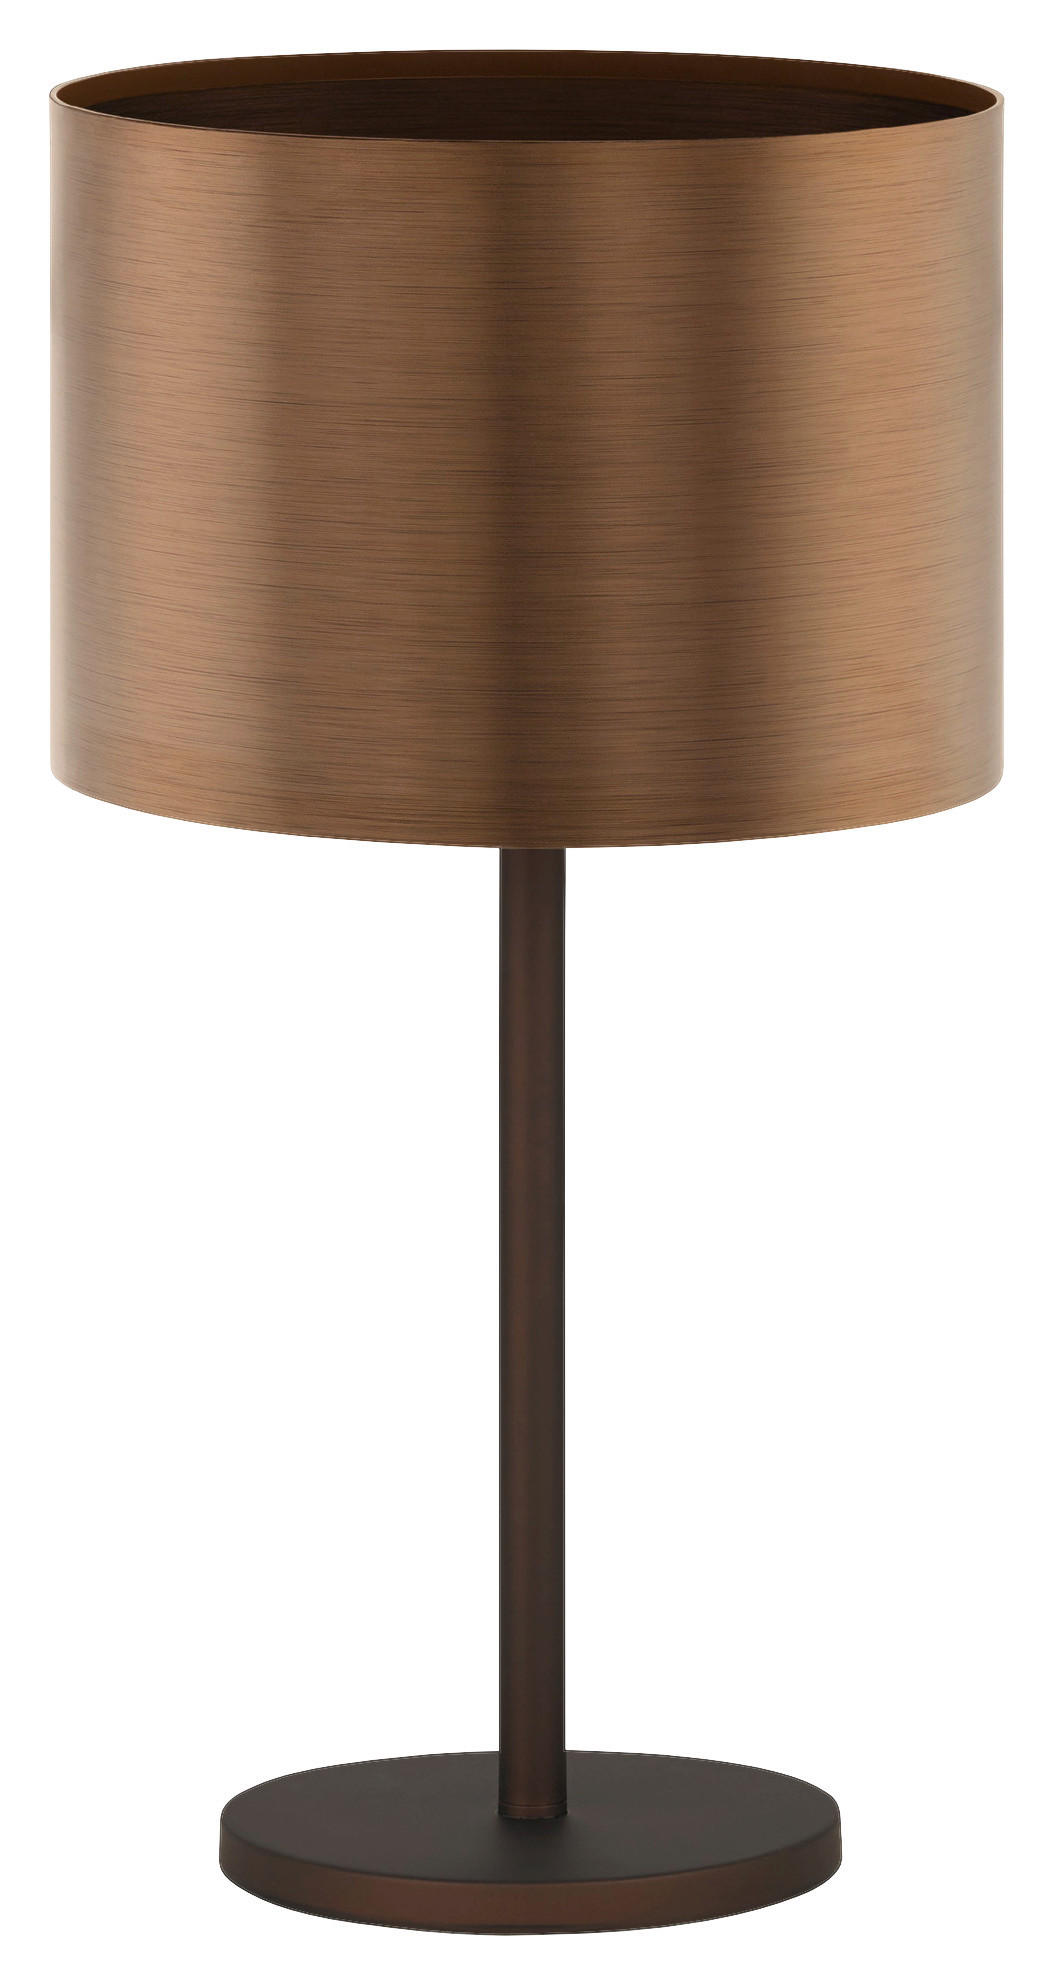 STOLNÁ LAMPA, E27, 35/66 cm  - hnedá/medená, Basics, kov/plast (35/66cm)